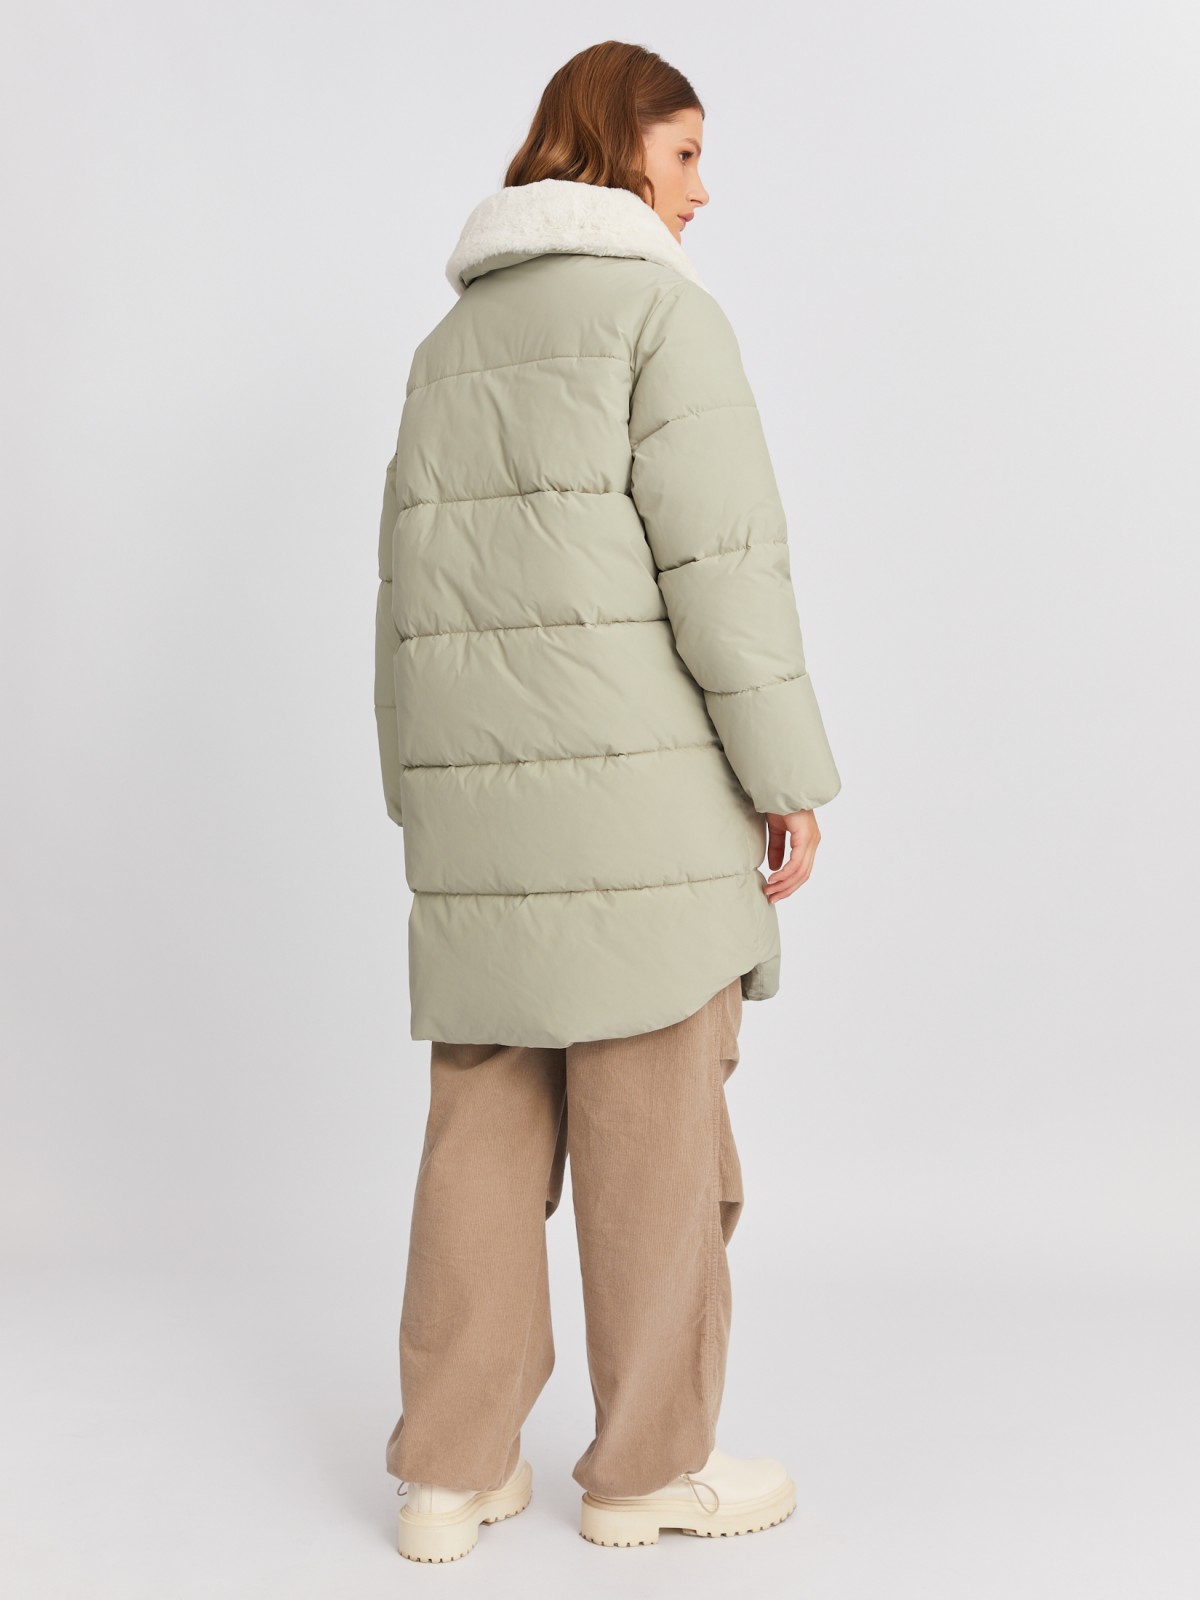 Тёплая куртка-пальто с воротником-стойкой и отделкой из экомеха